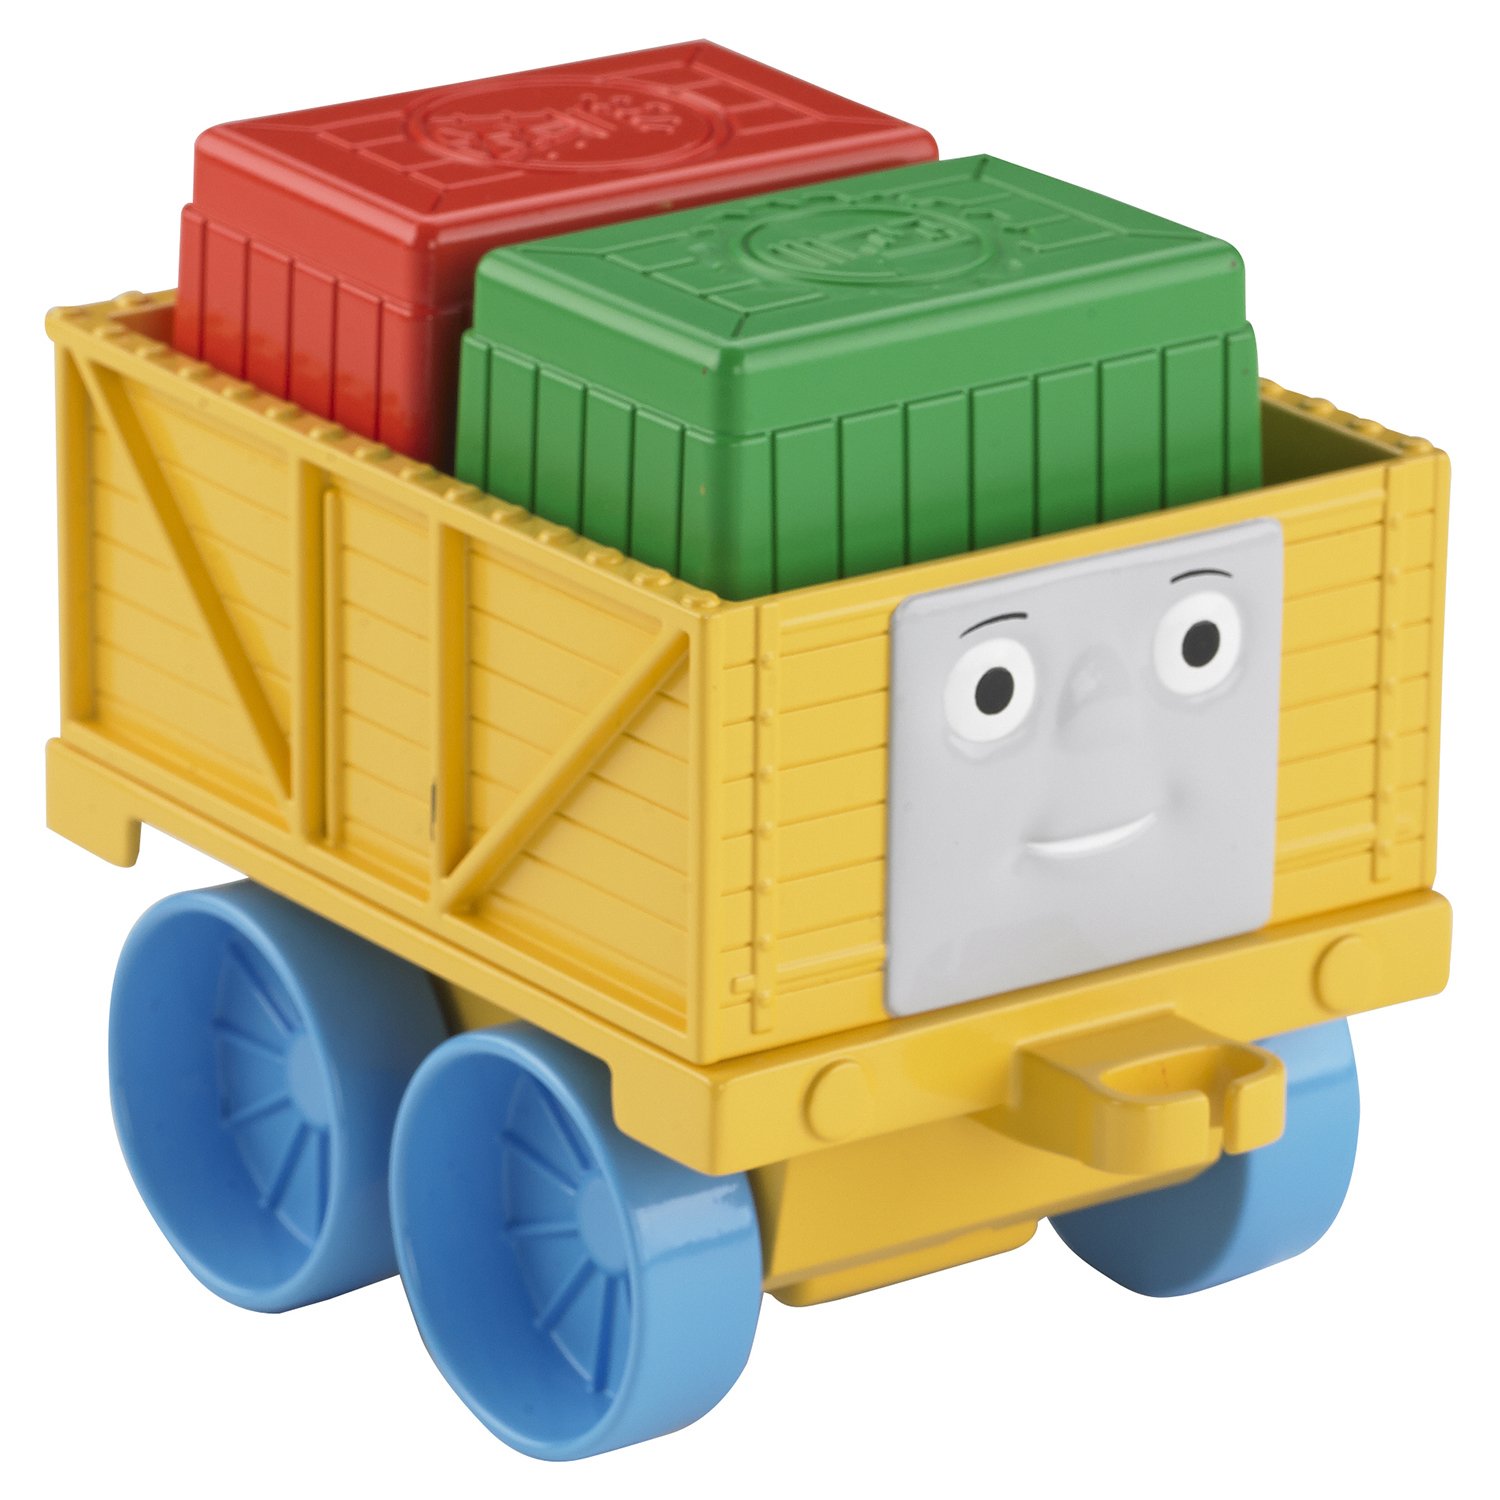 Игровой набор Thomas & Friends Первый паровозик малыша в ассортименте